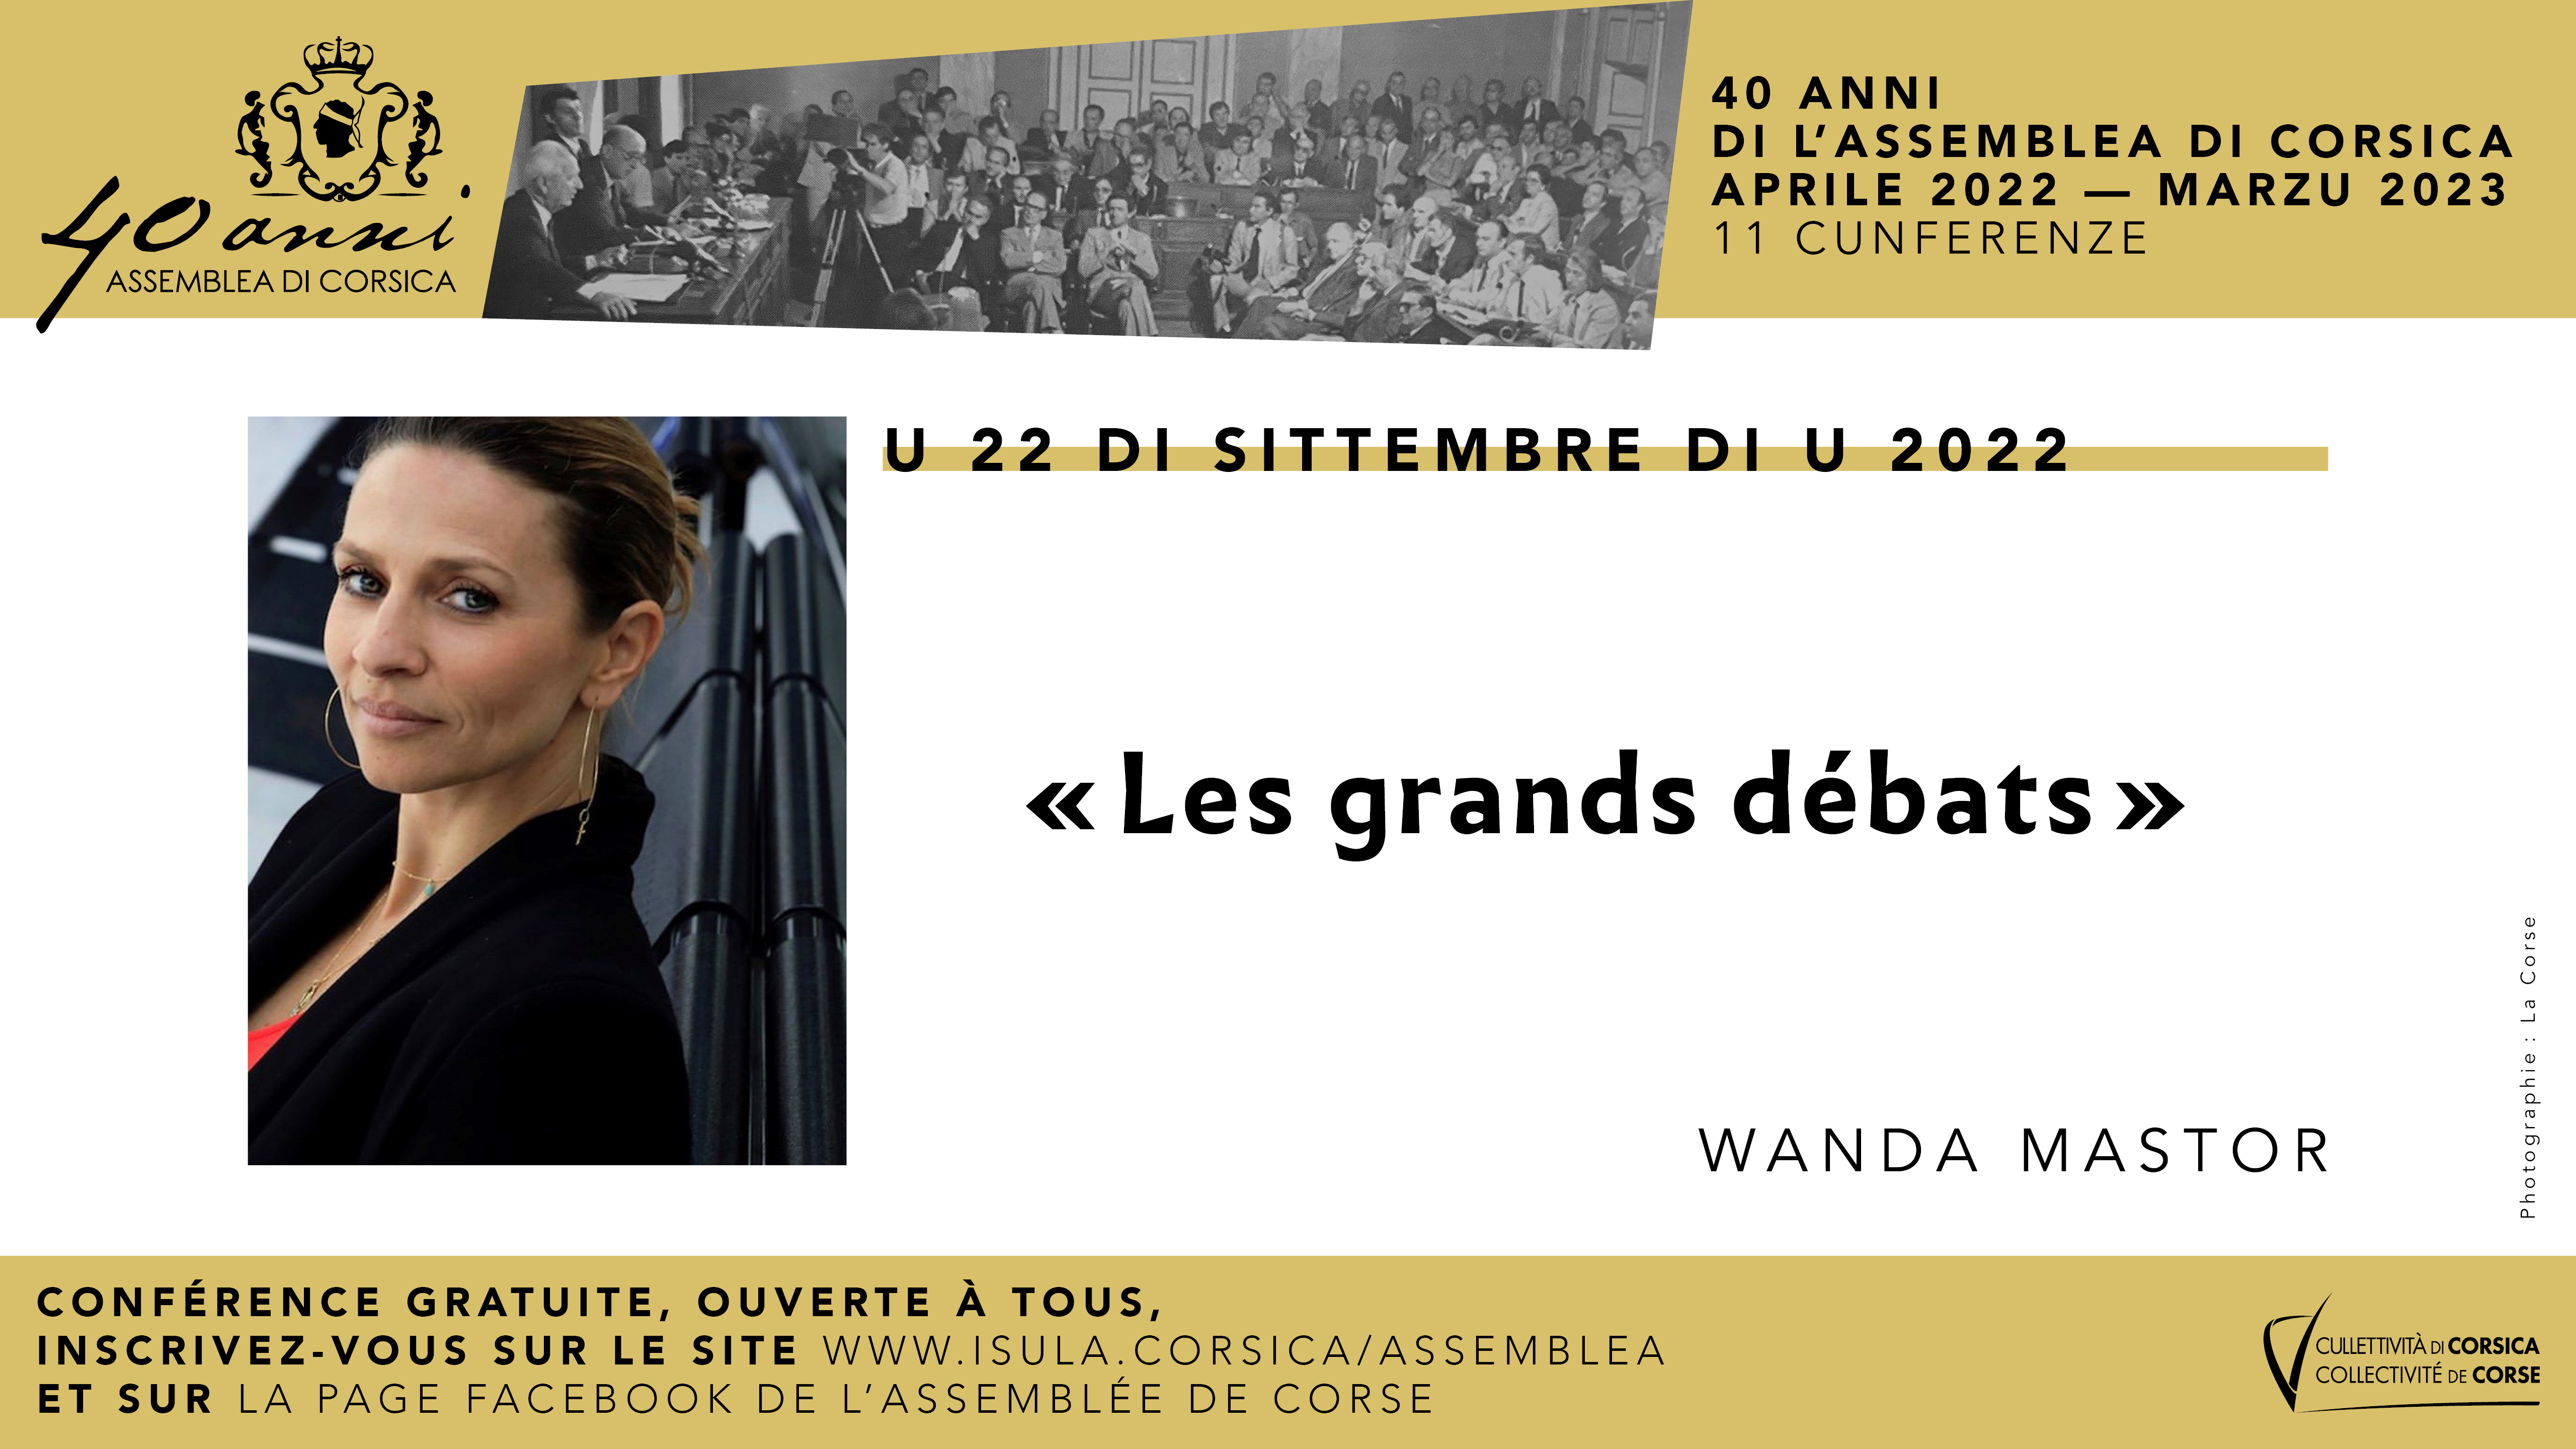 Wanda Mastor poursuit le cycle de conférences consacré aux 40 ans de l'Assemblea di Corsica 